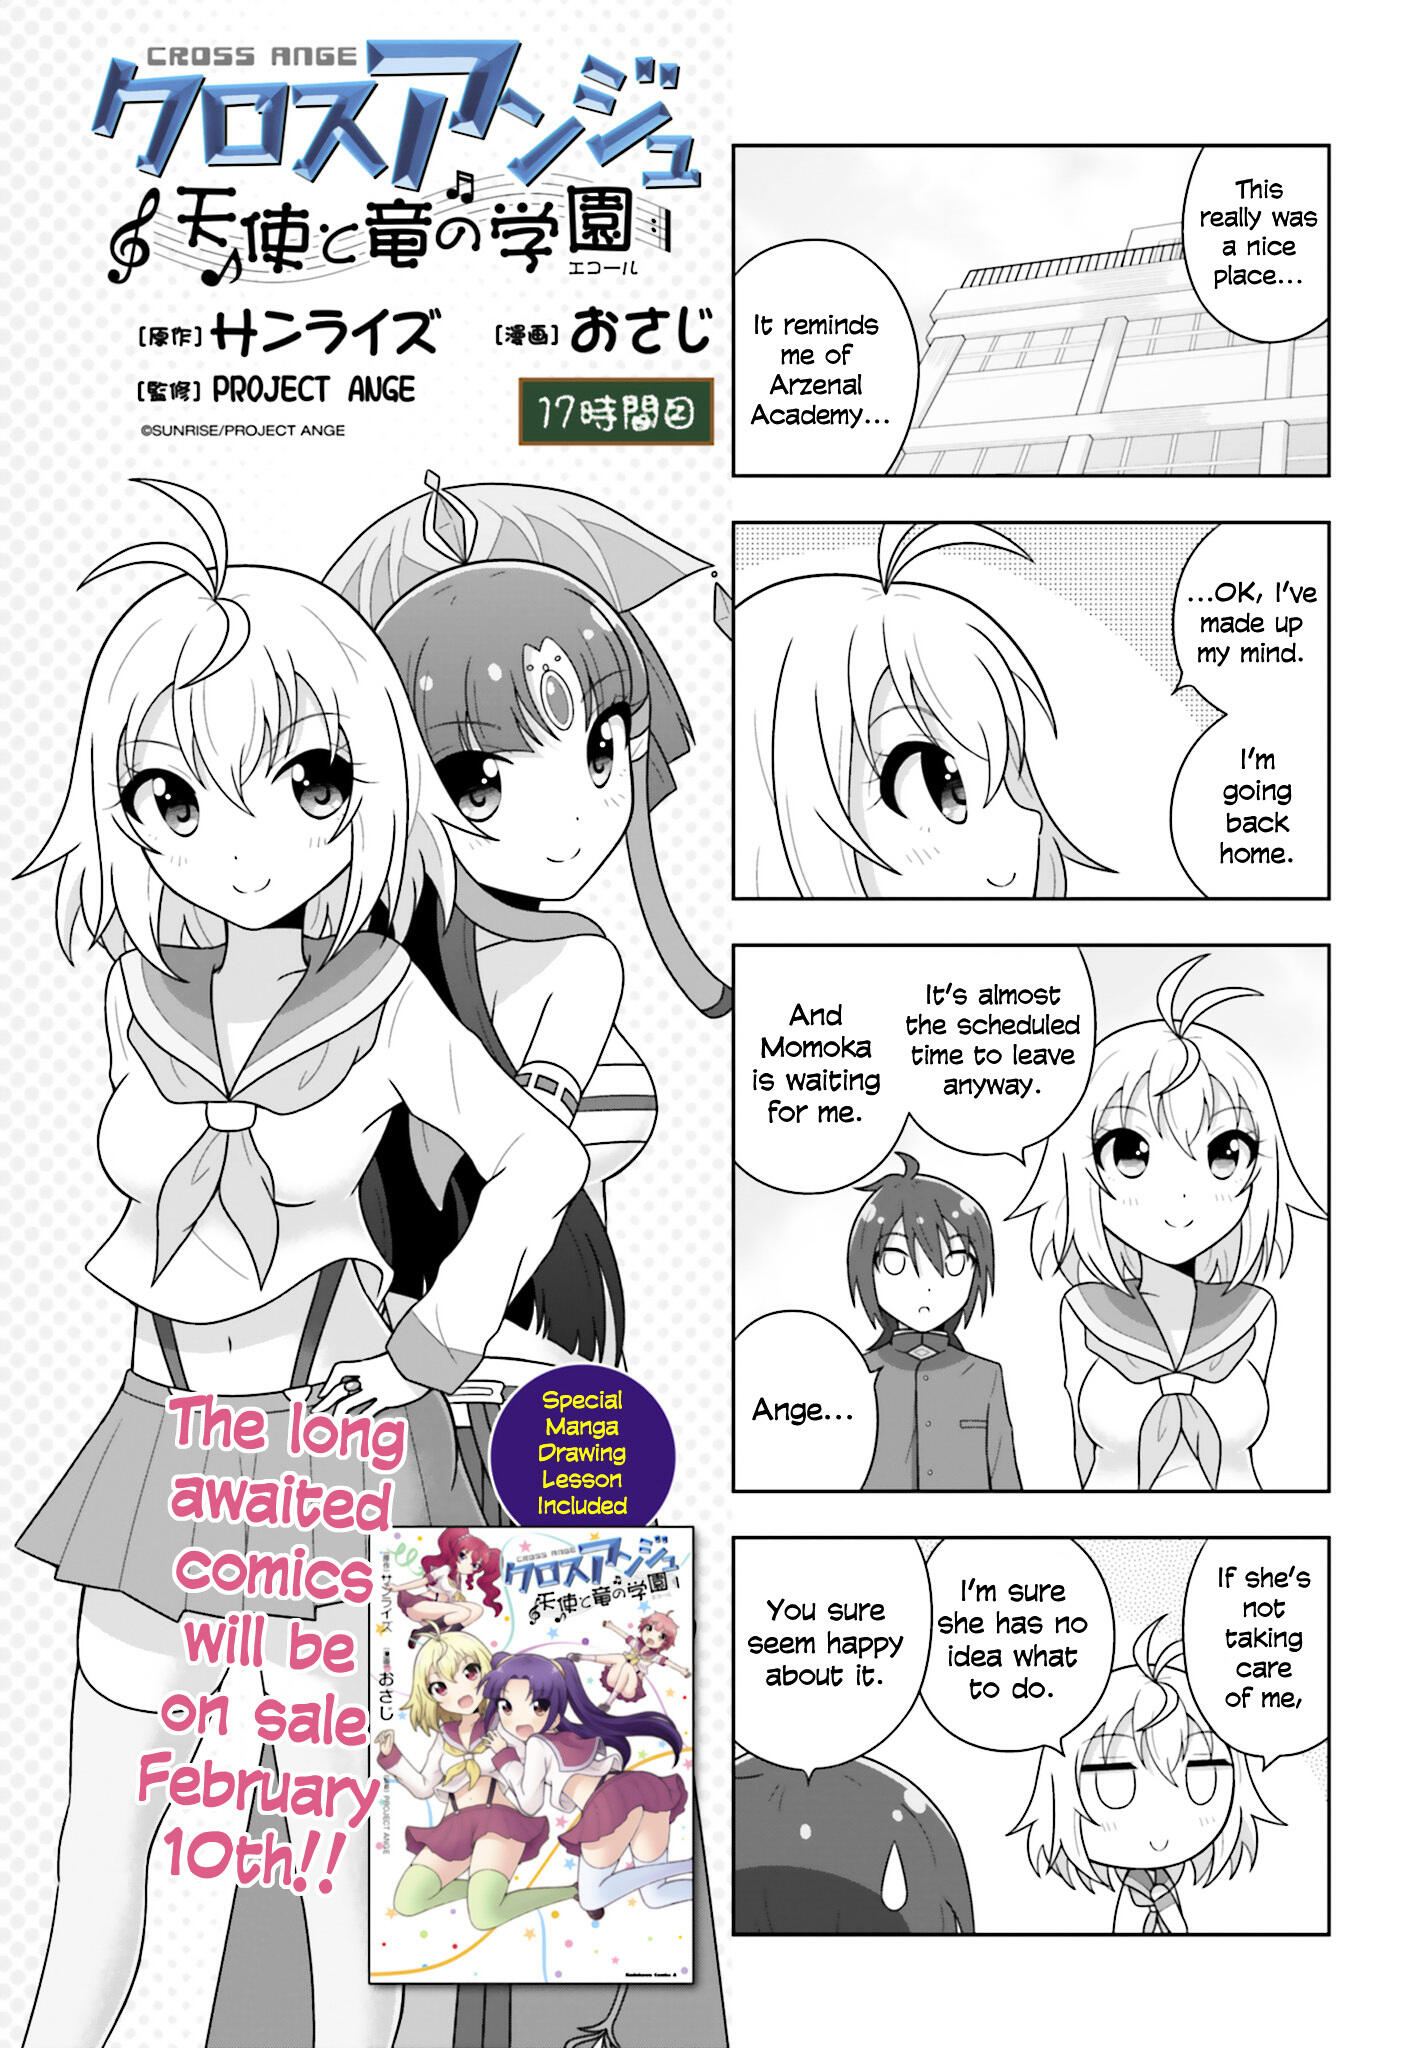 Cross Ange: Tenshi to Ryuu no Gakuen Manga